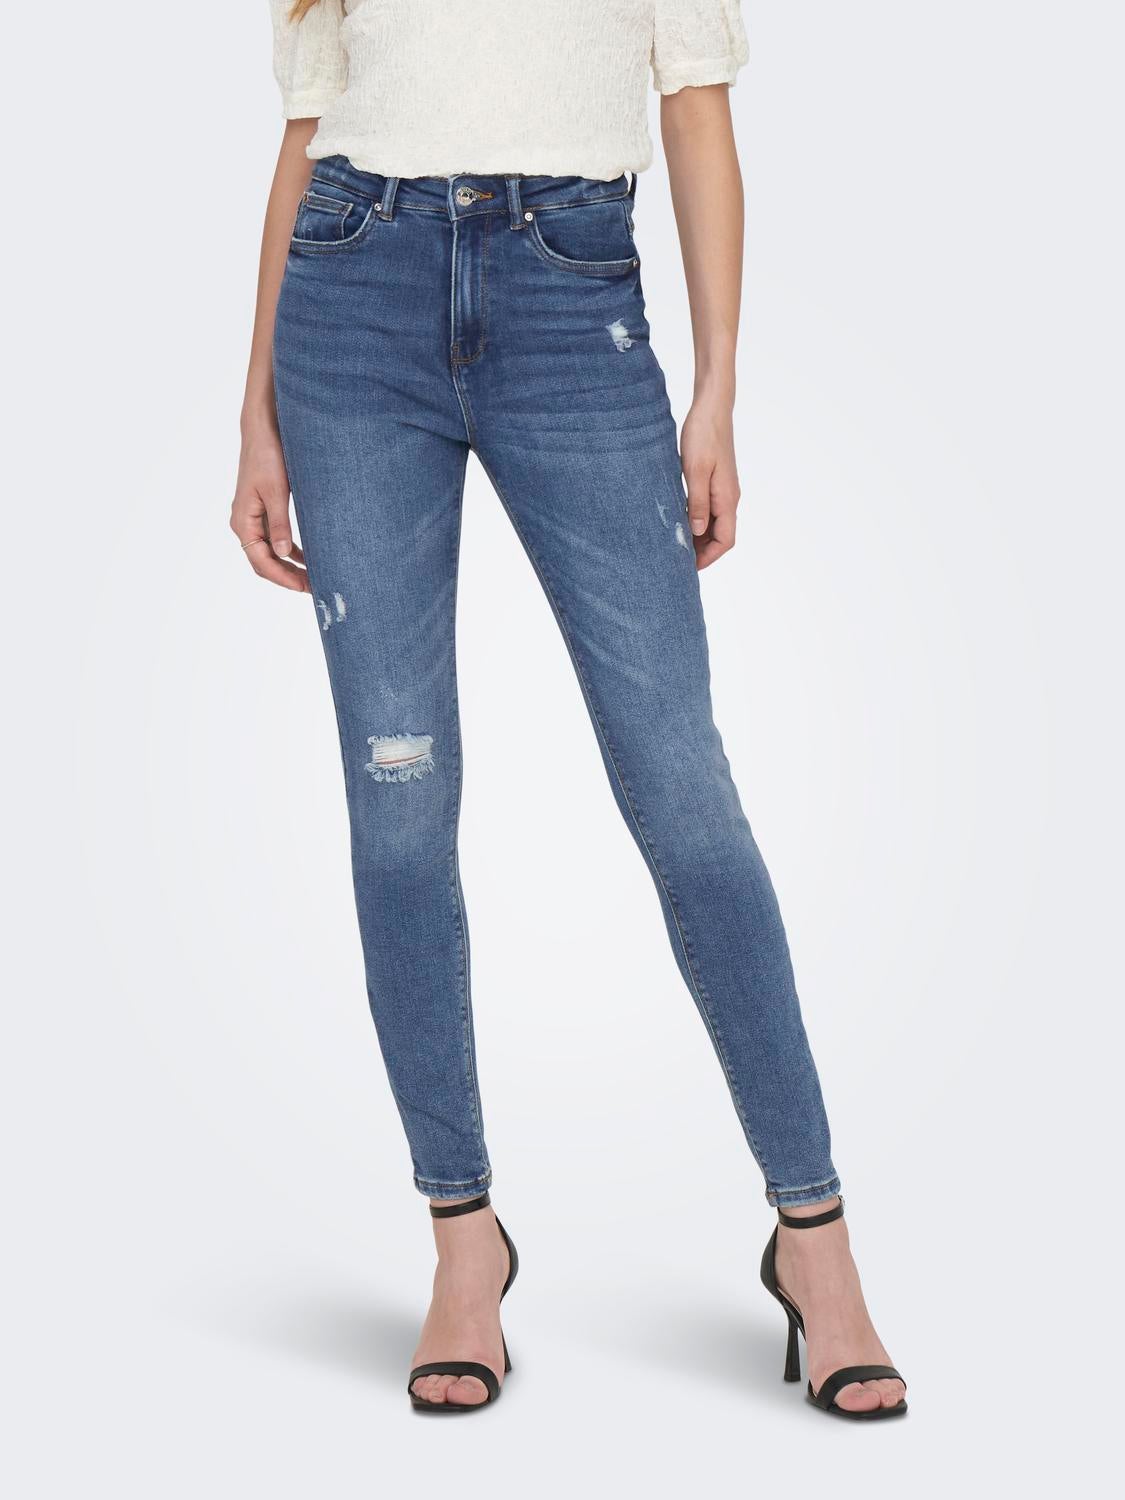 HERREN Jeans Basisch Rabatt 67 % NoName Jegging & Skinny & Slim Dunkelblau 27 